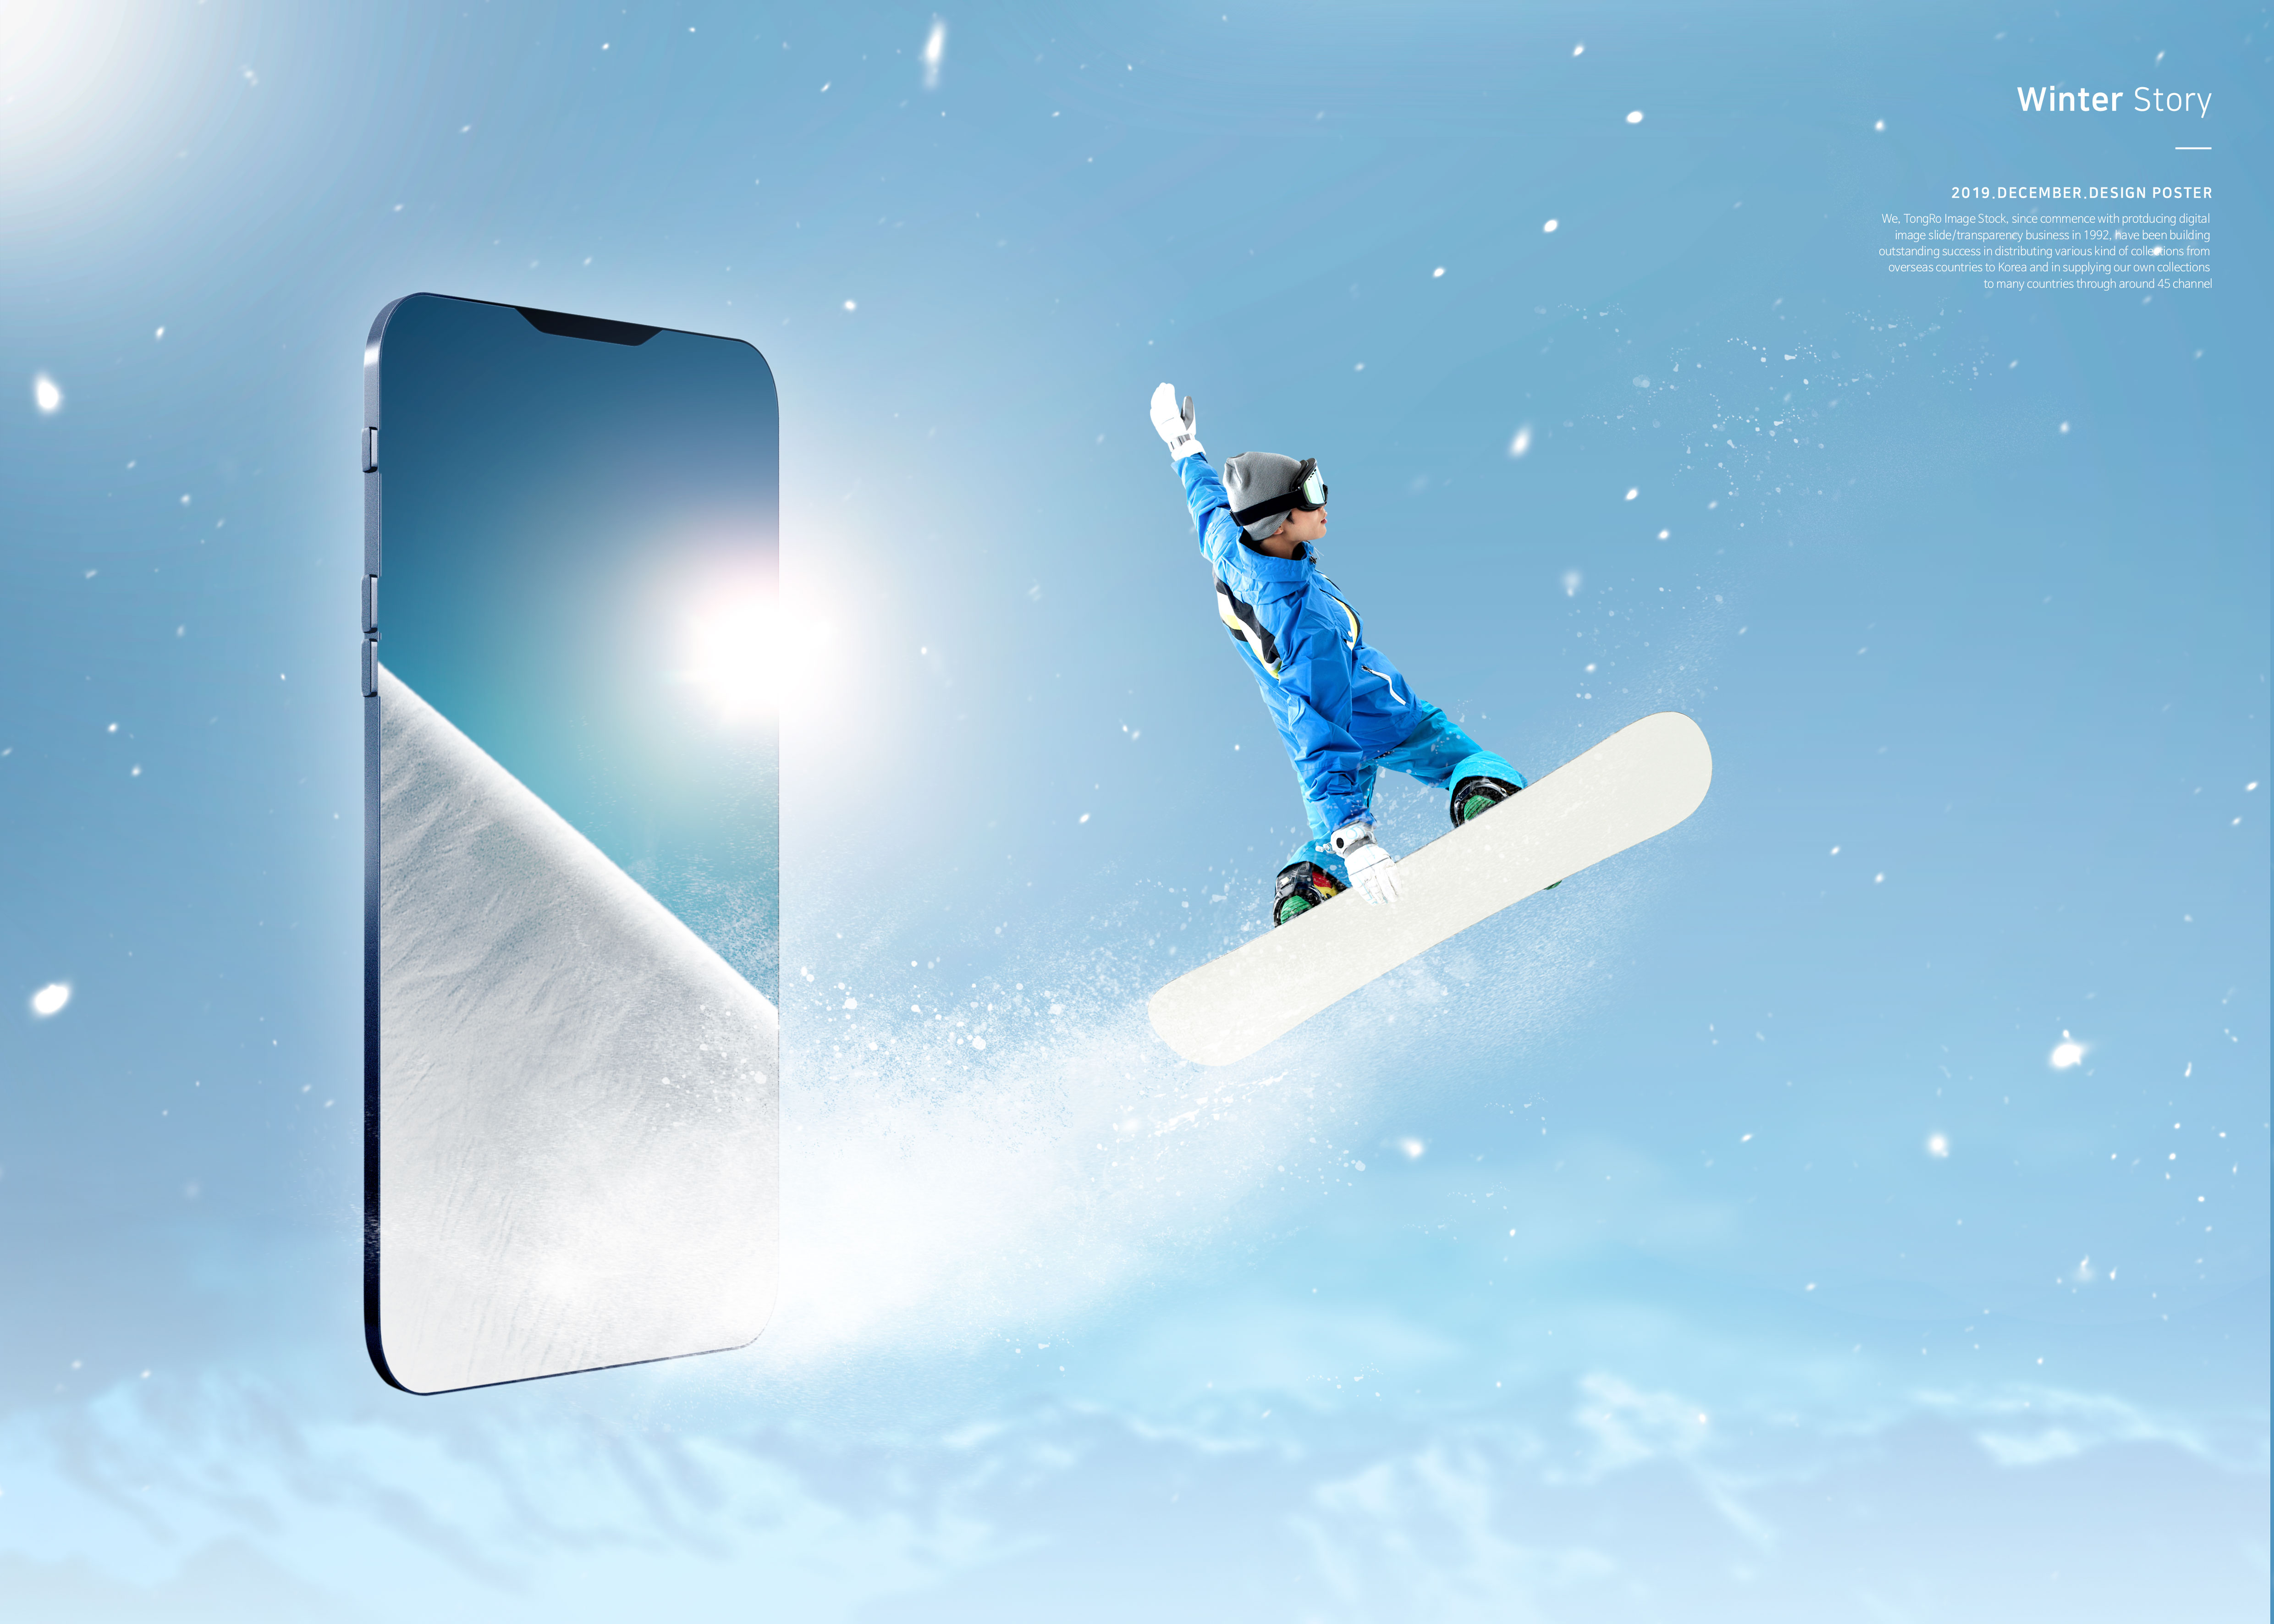 冬季故事雪山滑雪运动推广海报PSD素材第一素材精选模板插图